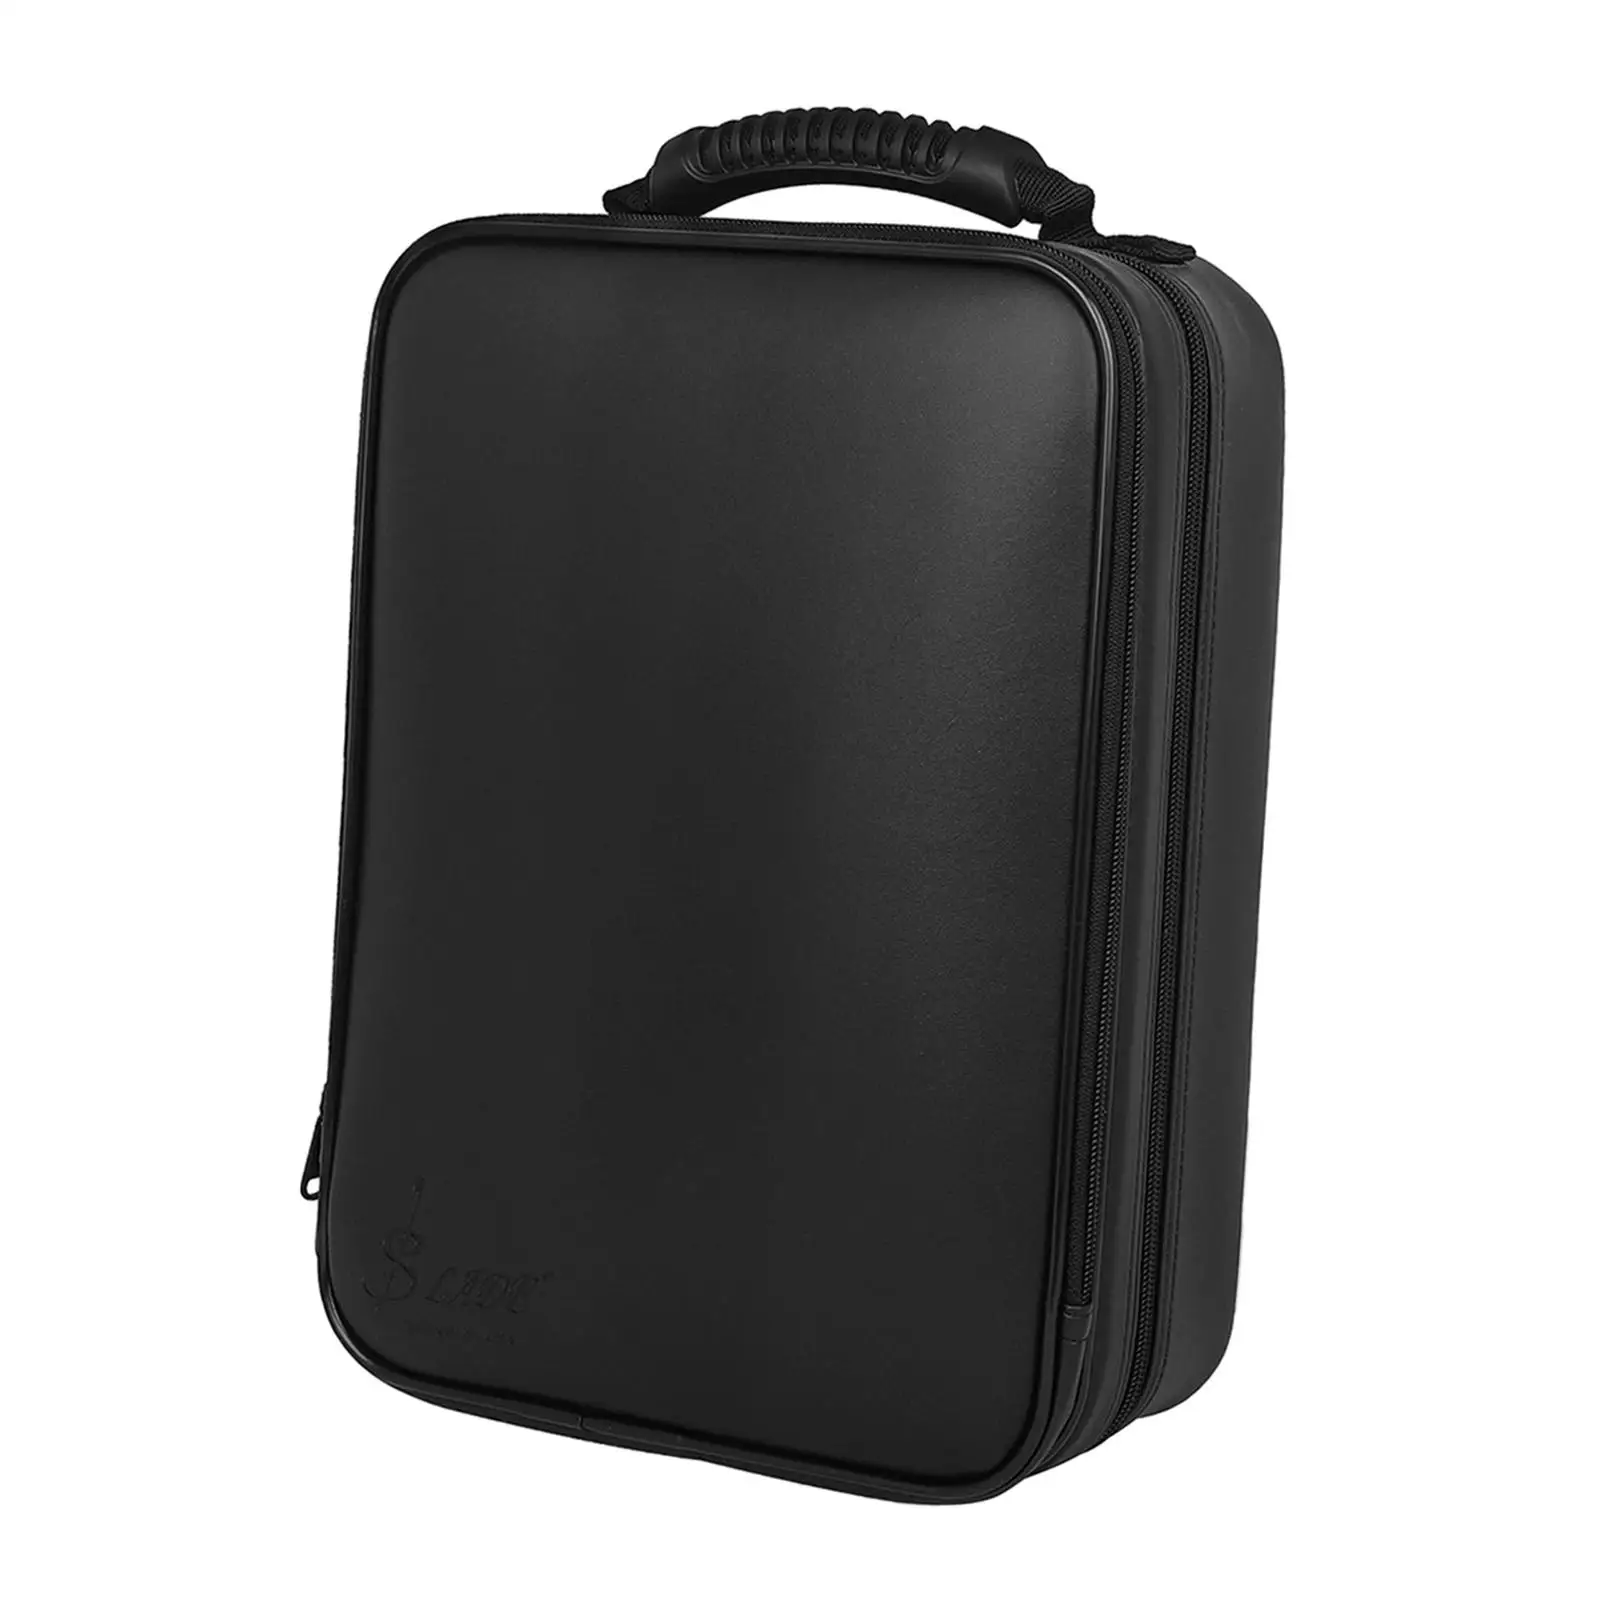 Clarinet Handbag Lightweight Clarinet Storage Case for Outdoor Travel